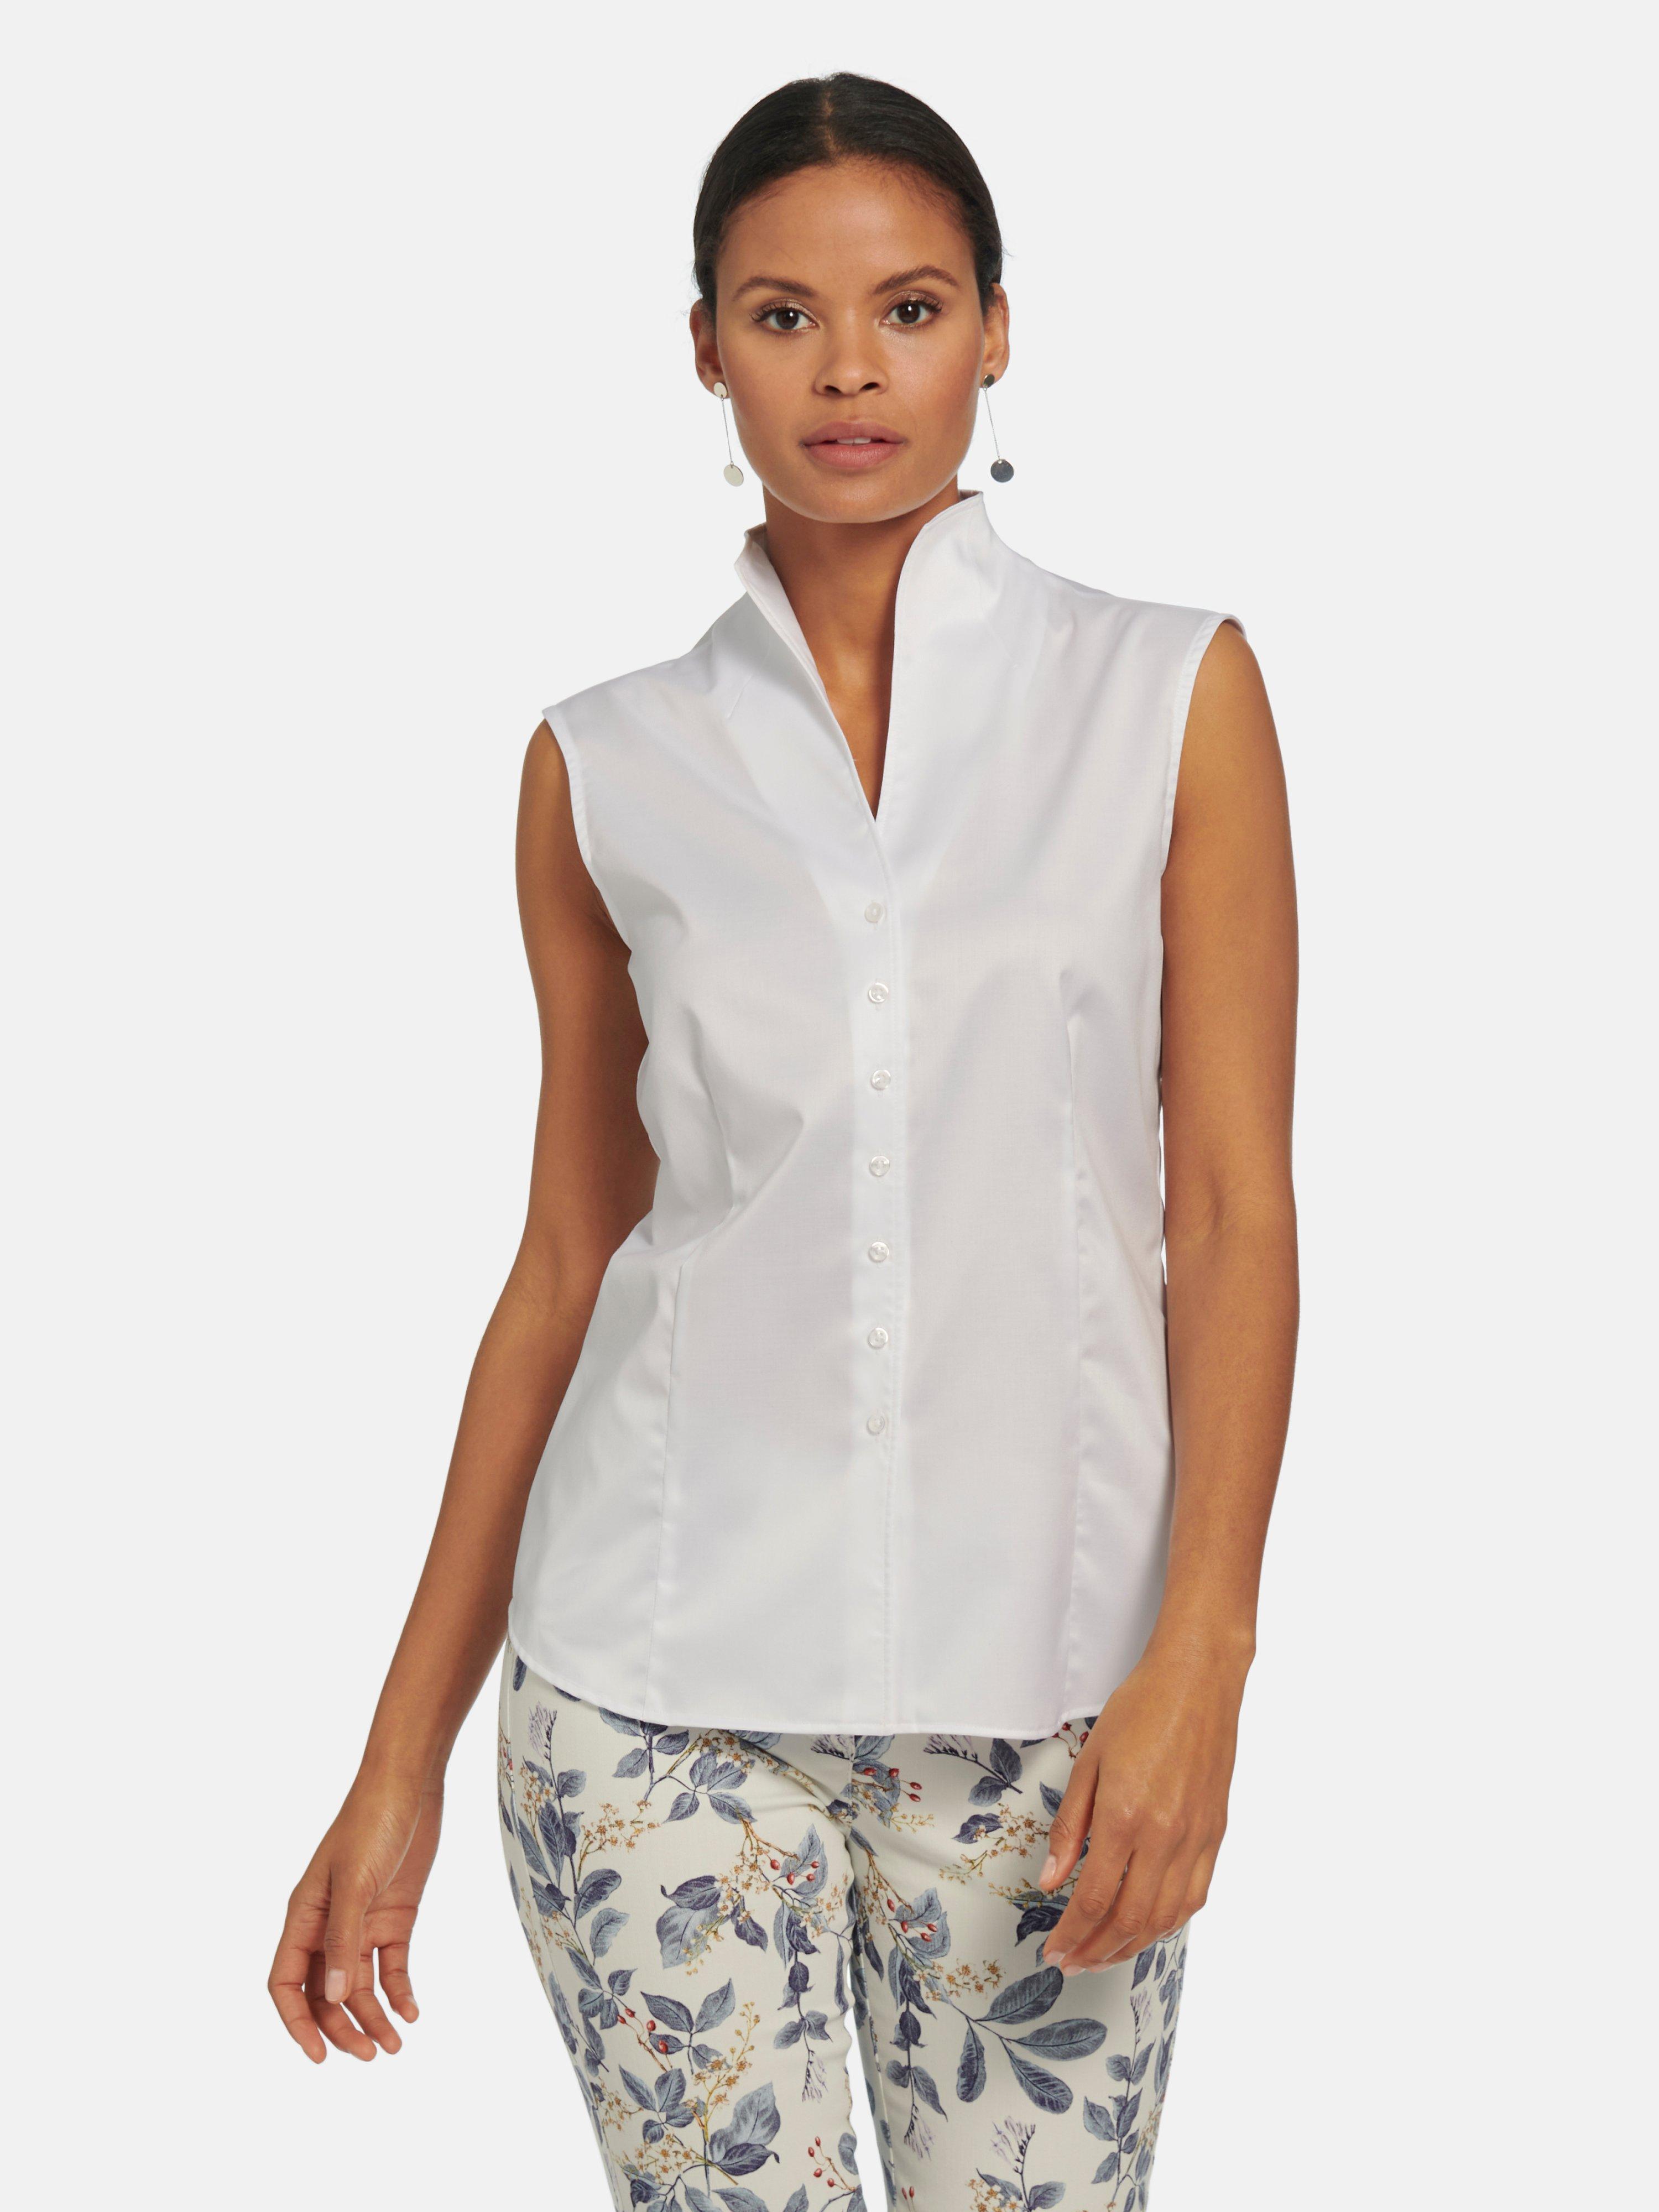 Goed doen Reactor Verstrikking Eterna - Mouwloze blouse van 100% katoen - wit